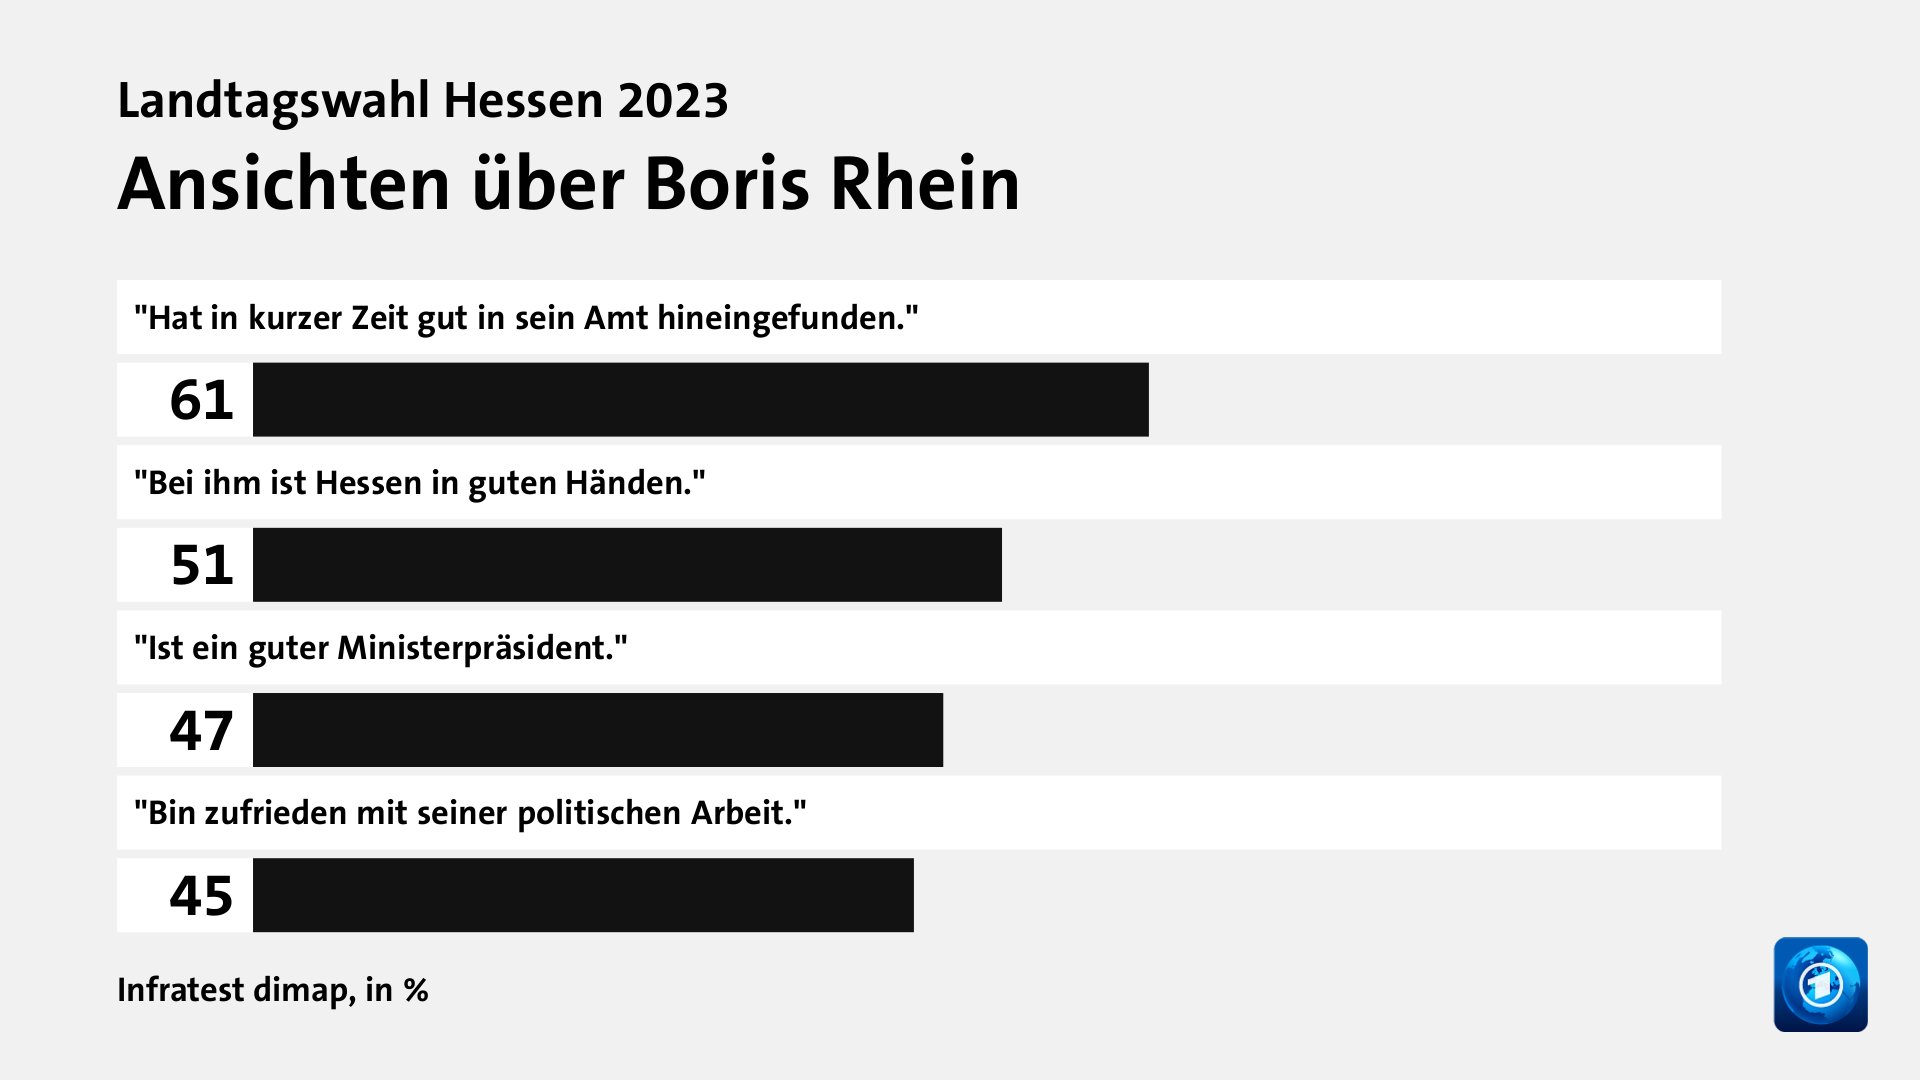 Ansichten über Boris Rhein, in %: 